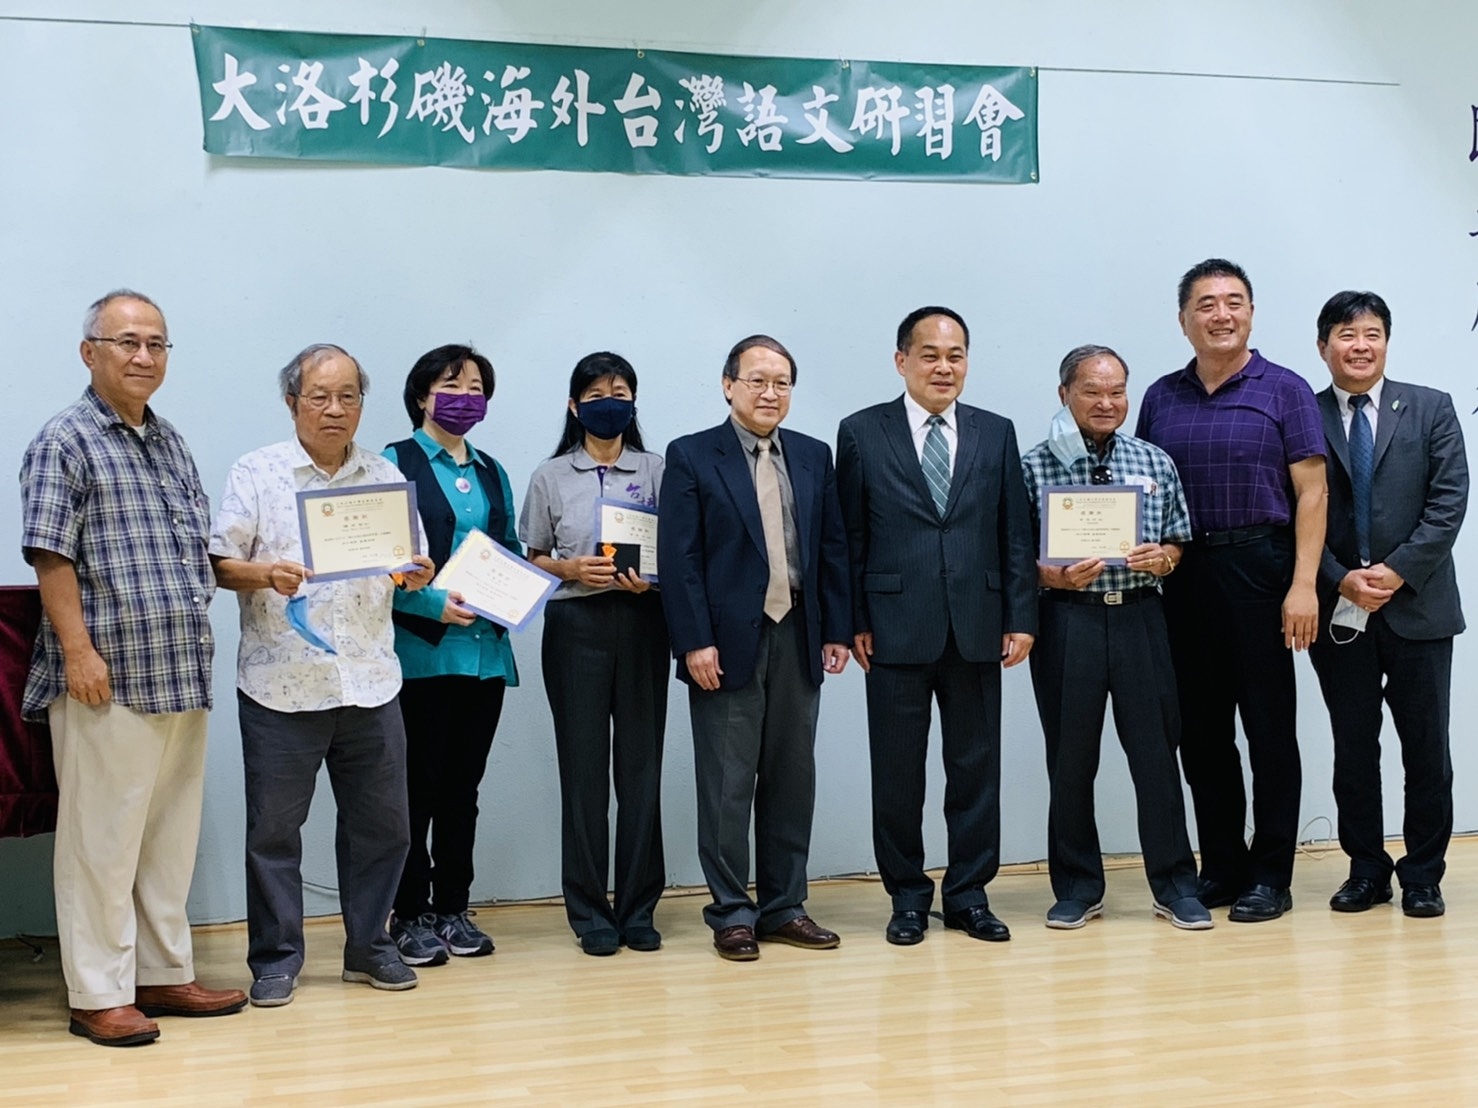 研習會授課講師接受台灣學校頒贈感謝證書後與貴賓合影。